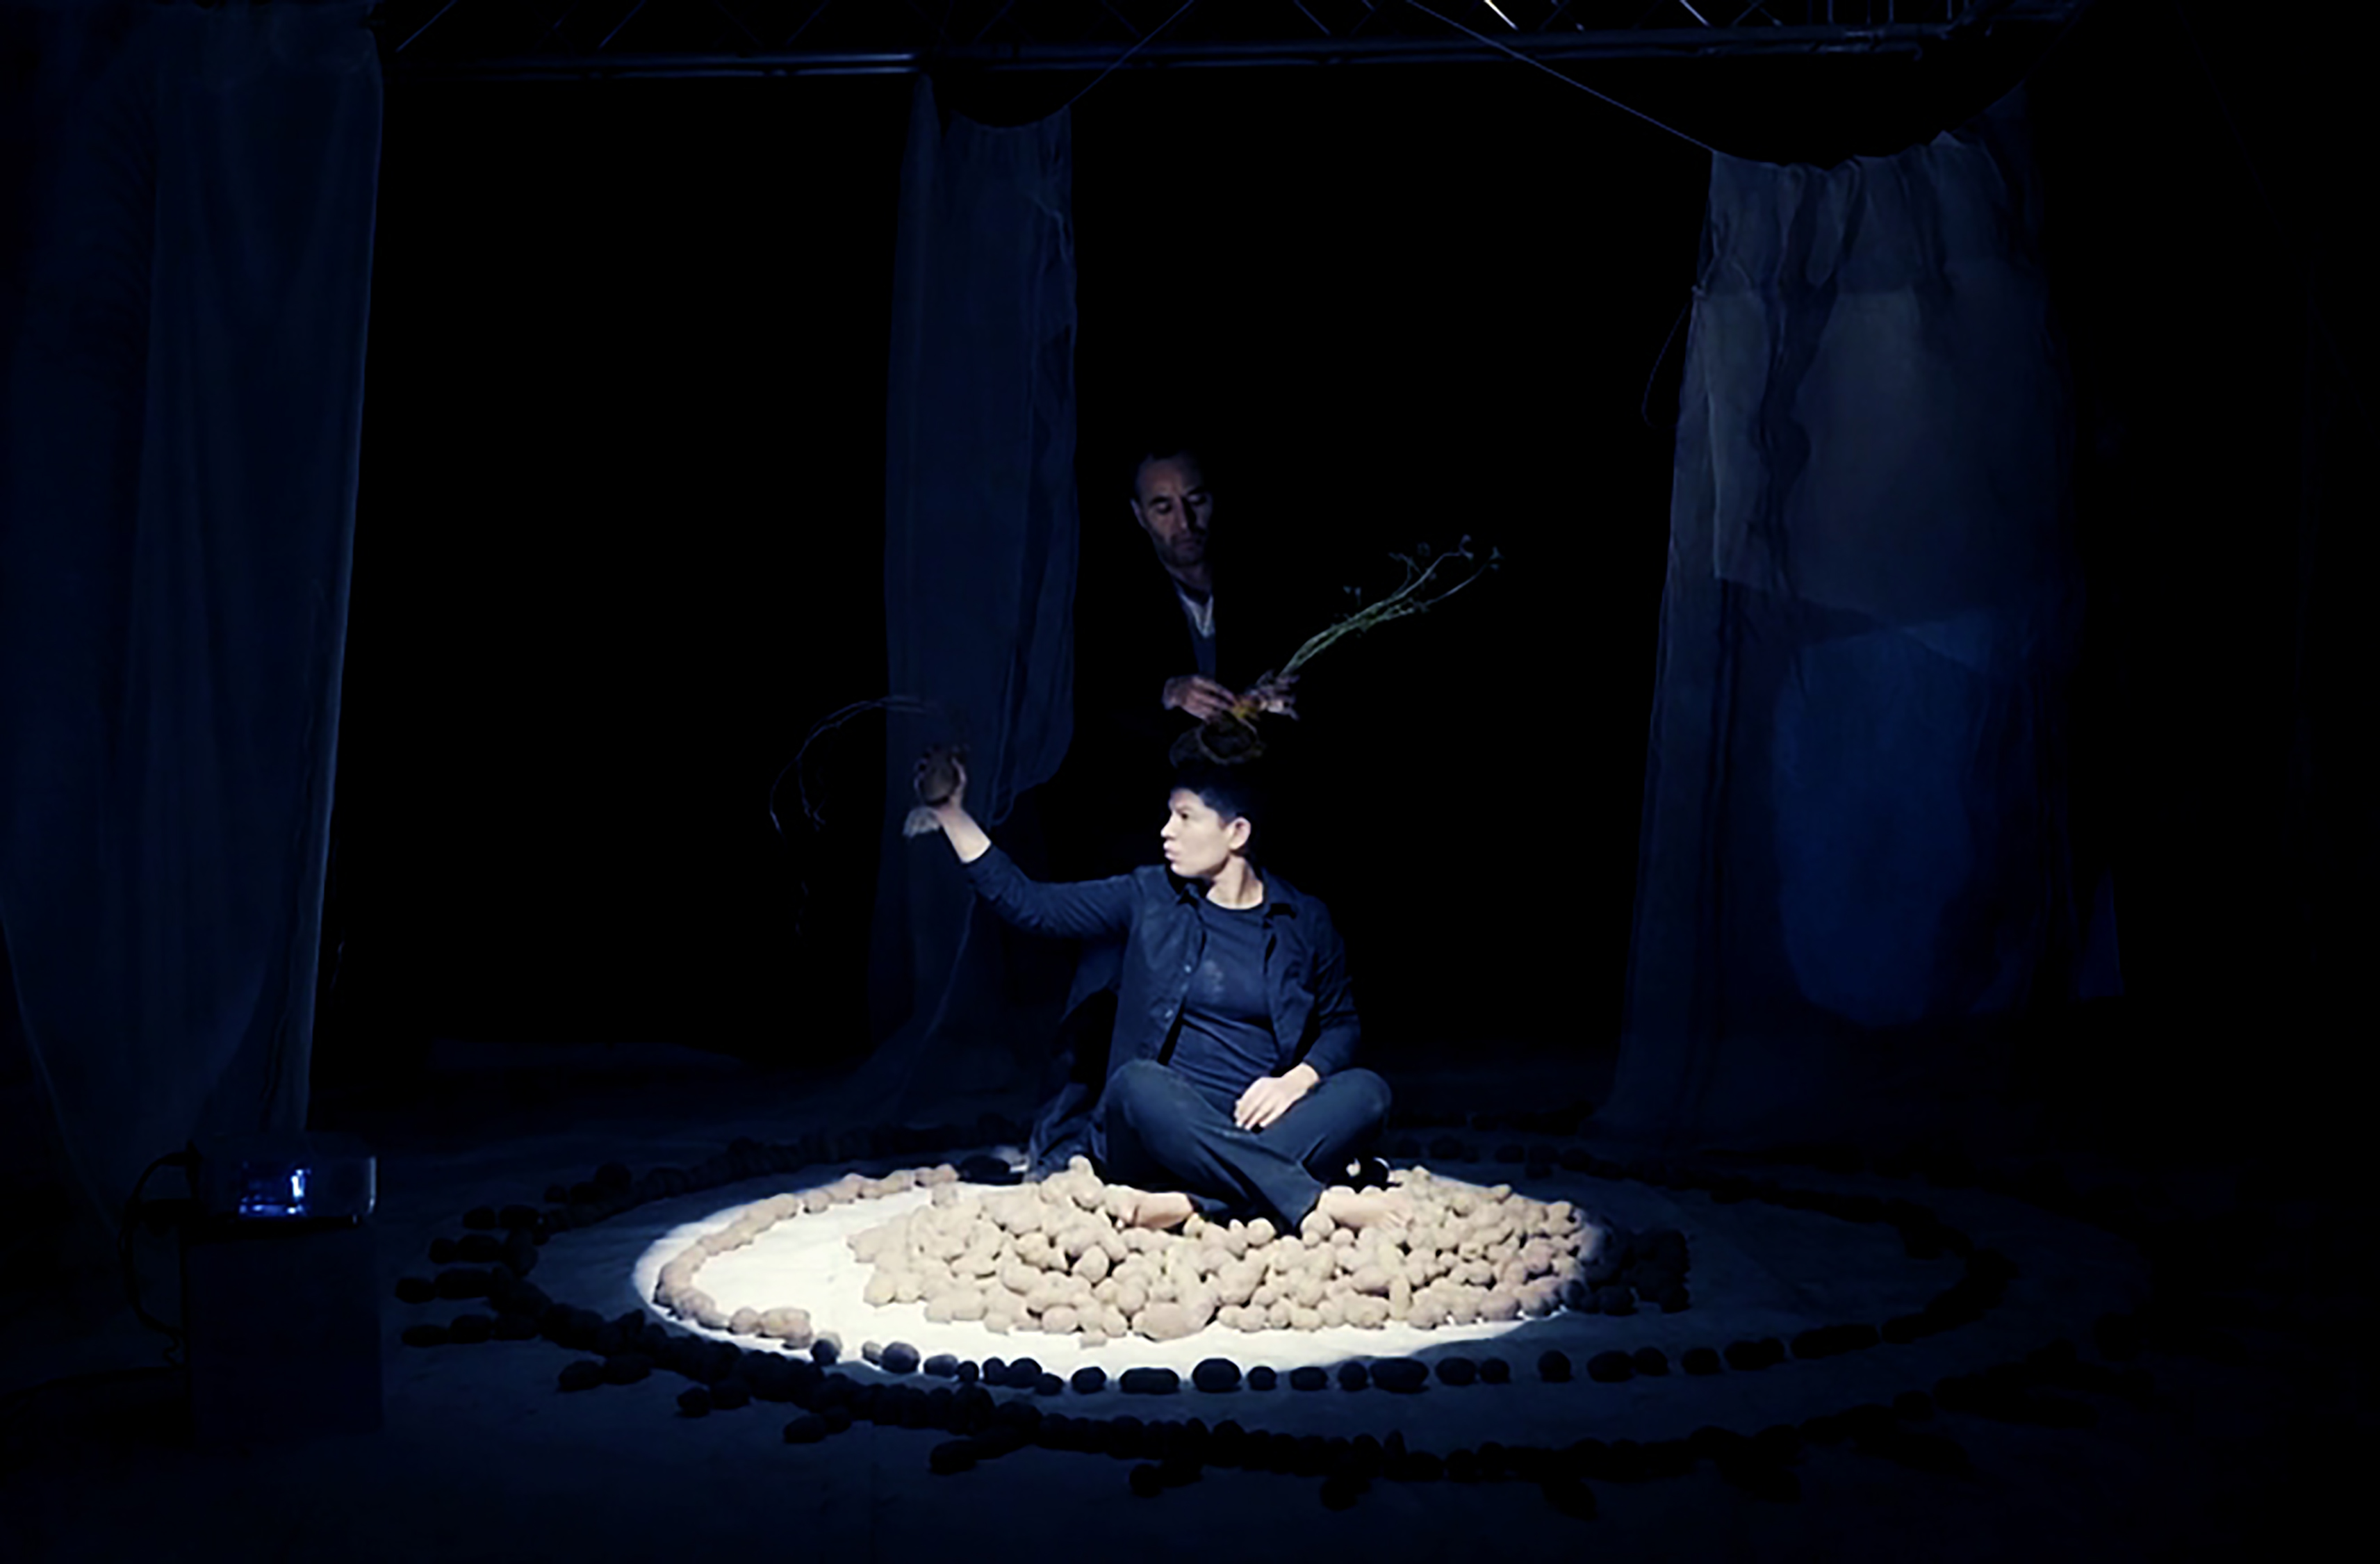 Performerin sitzt auf erdigen Kartoffeln mit erhobener Hand im Schneidersitz in einem hell erleuchteten Kreis. Im Hintergrund ist ein zweiter Performer.